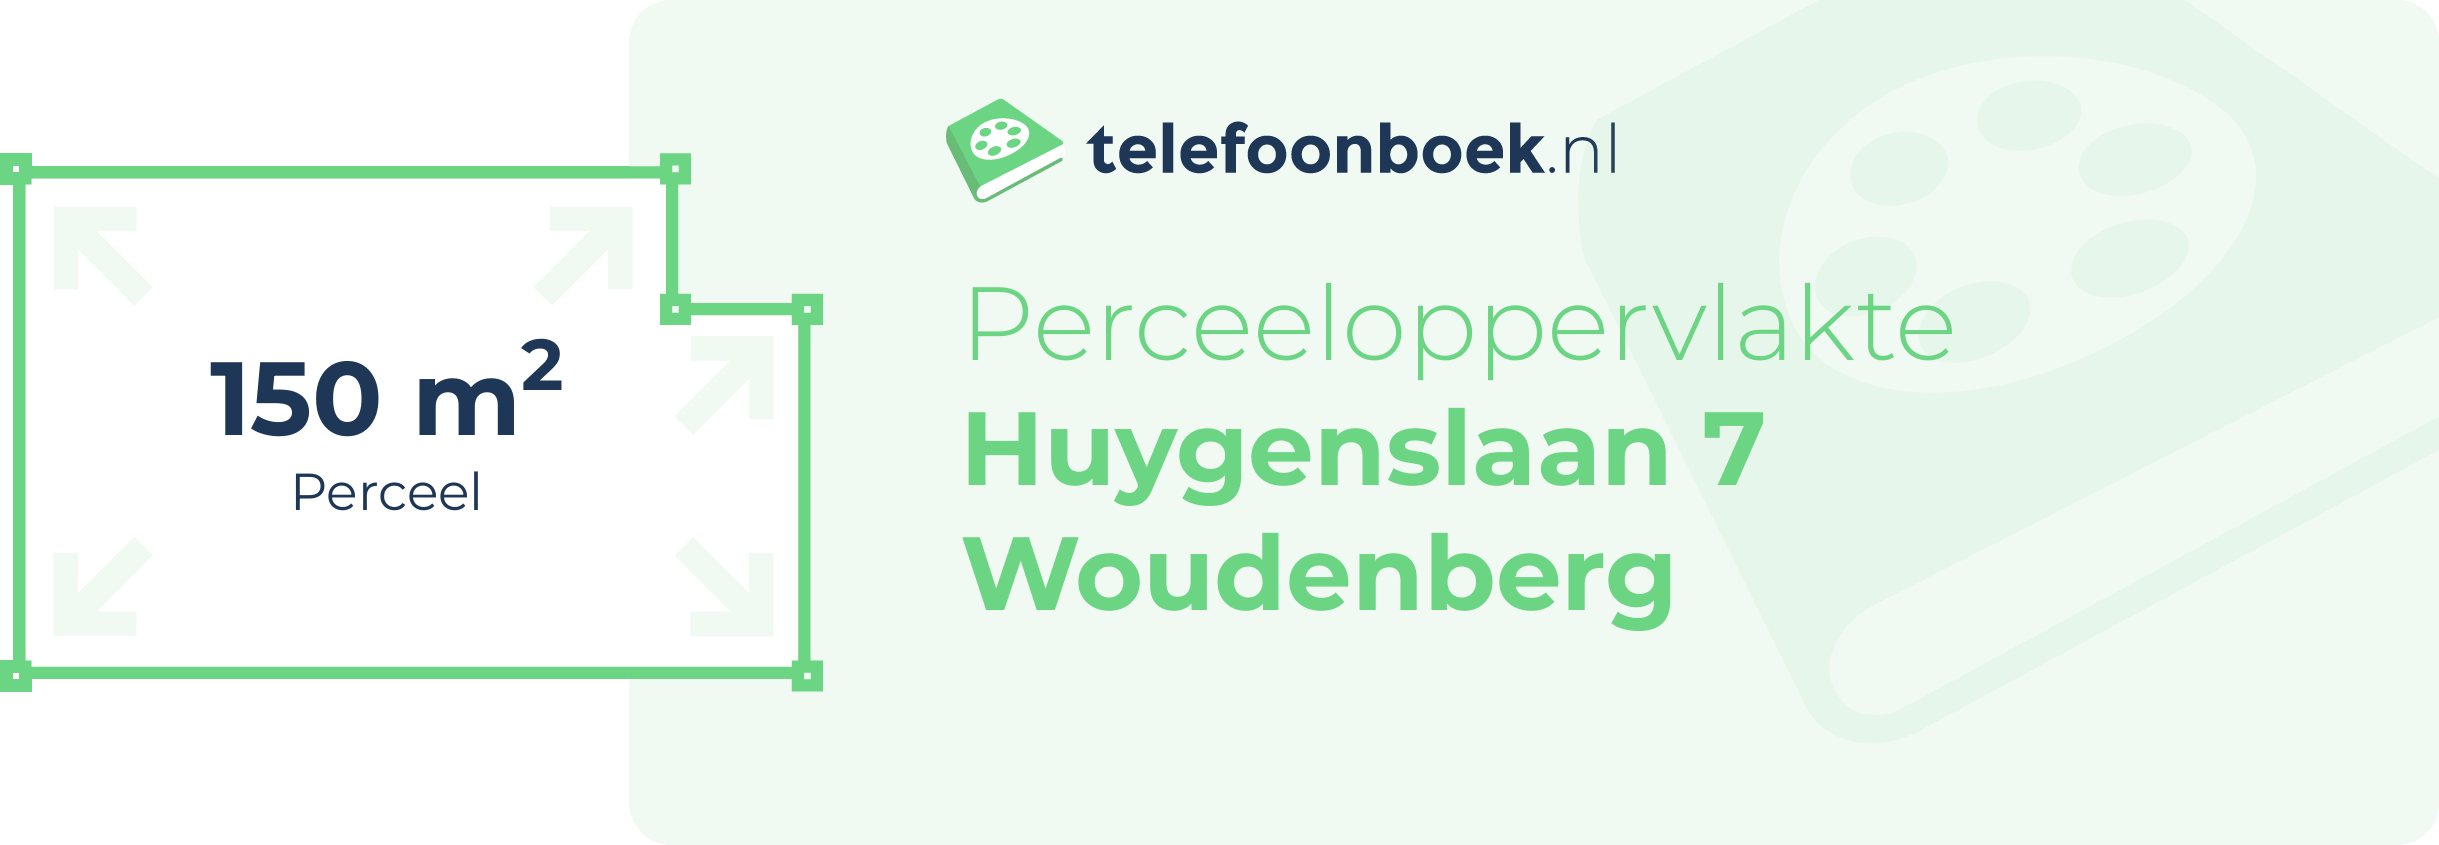 Perceeloppervlakte Huygenslaan 7 Woudenberg